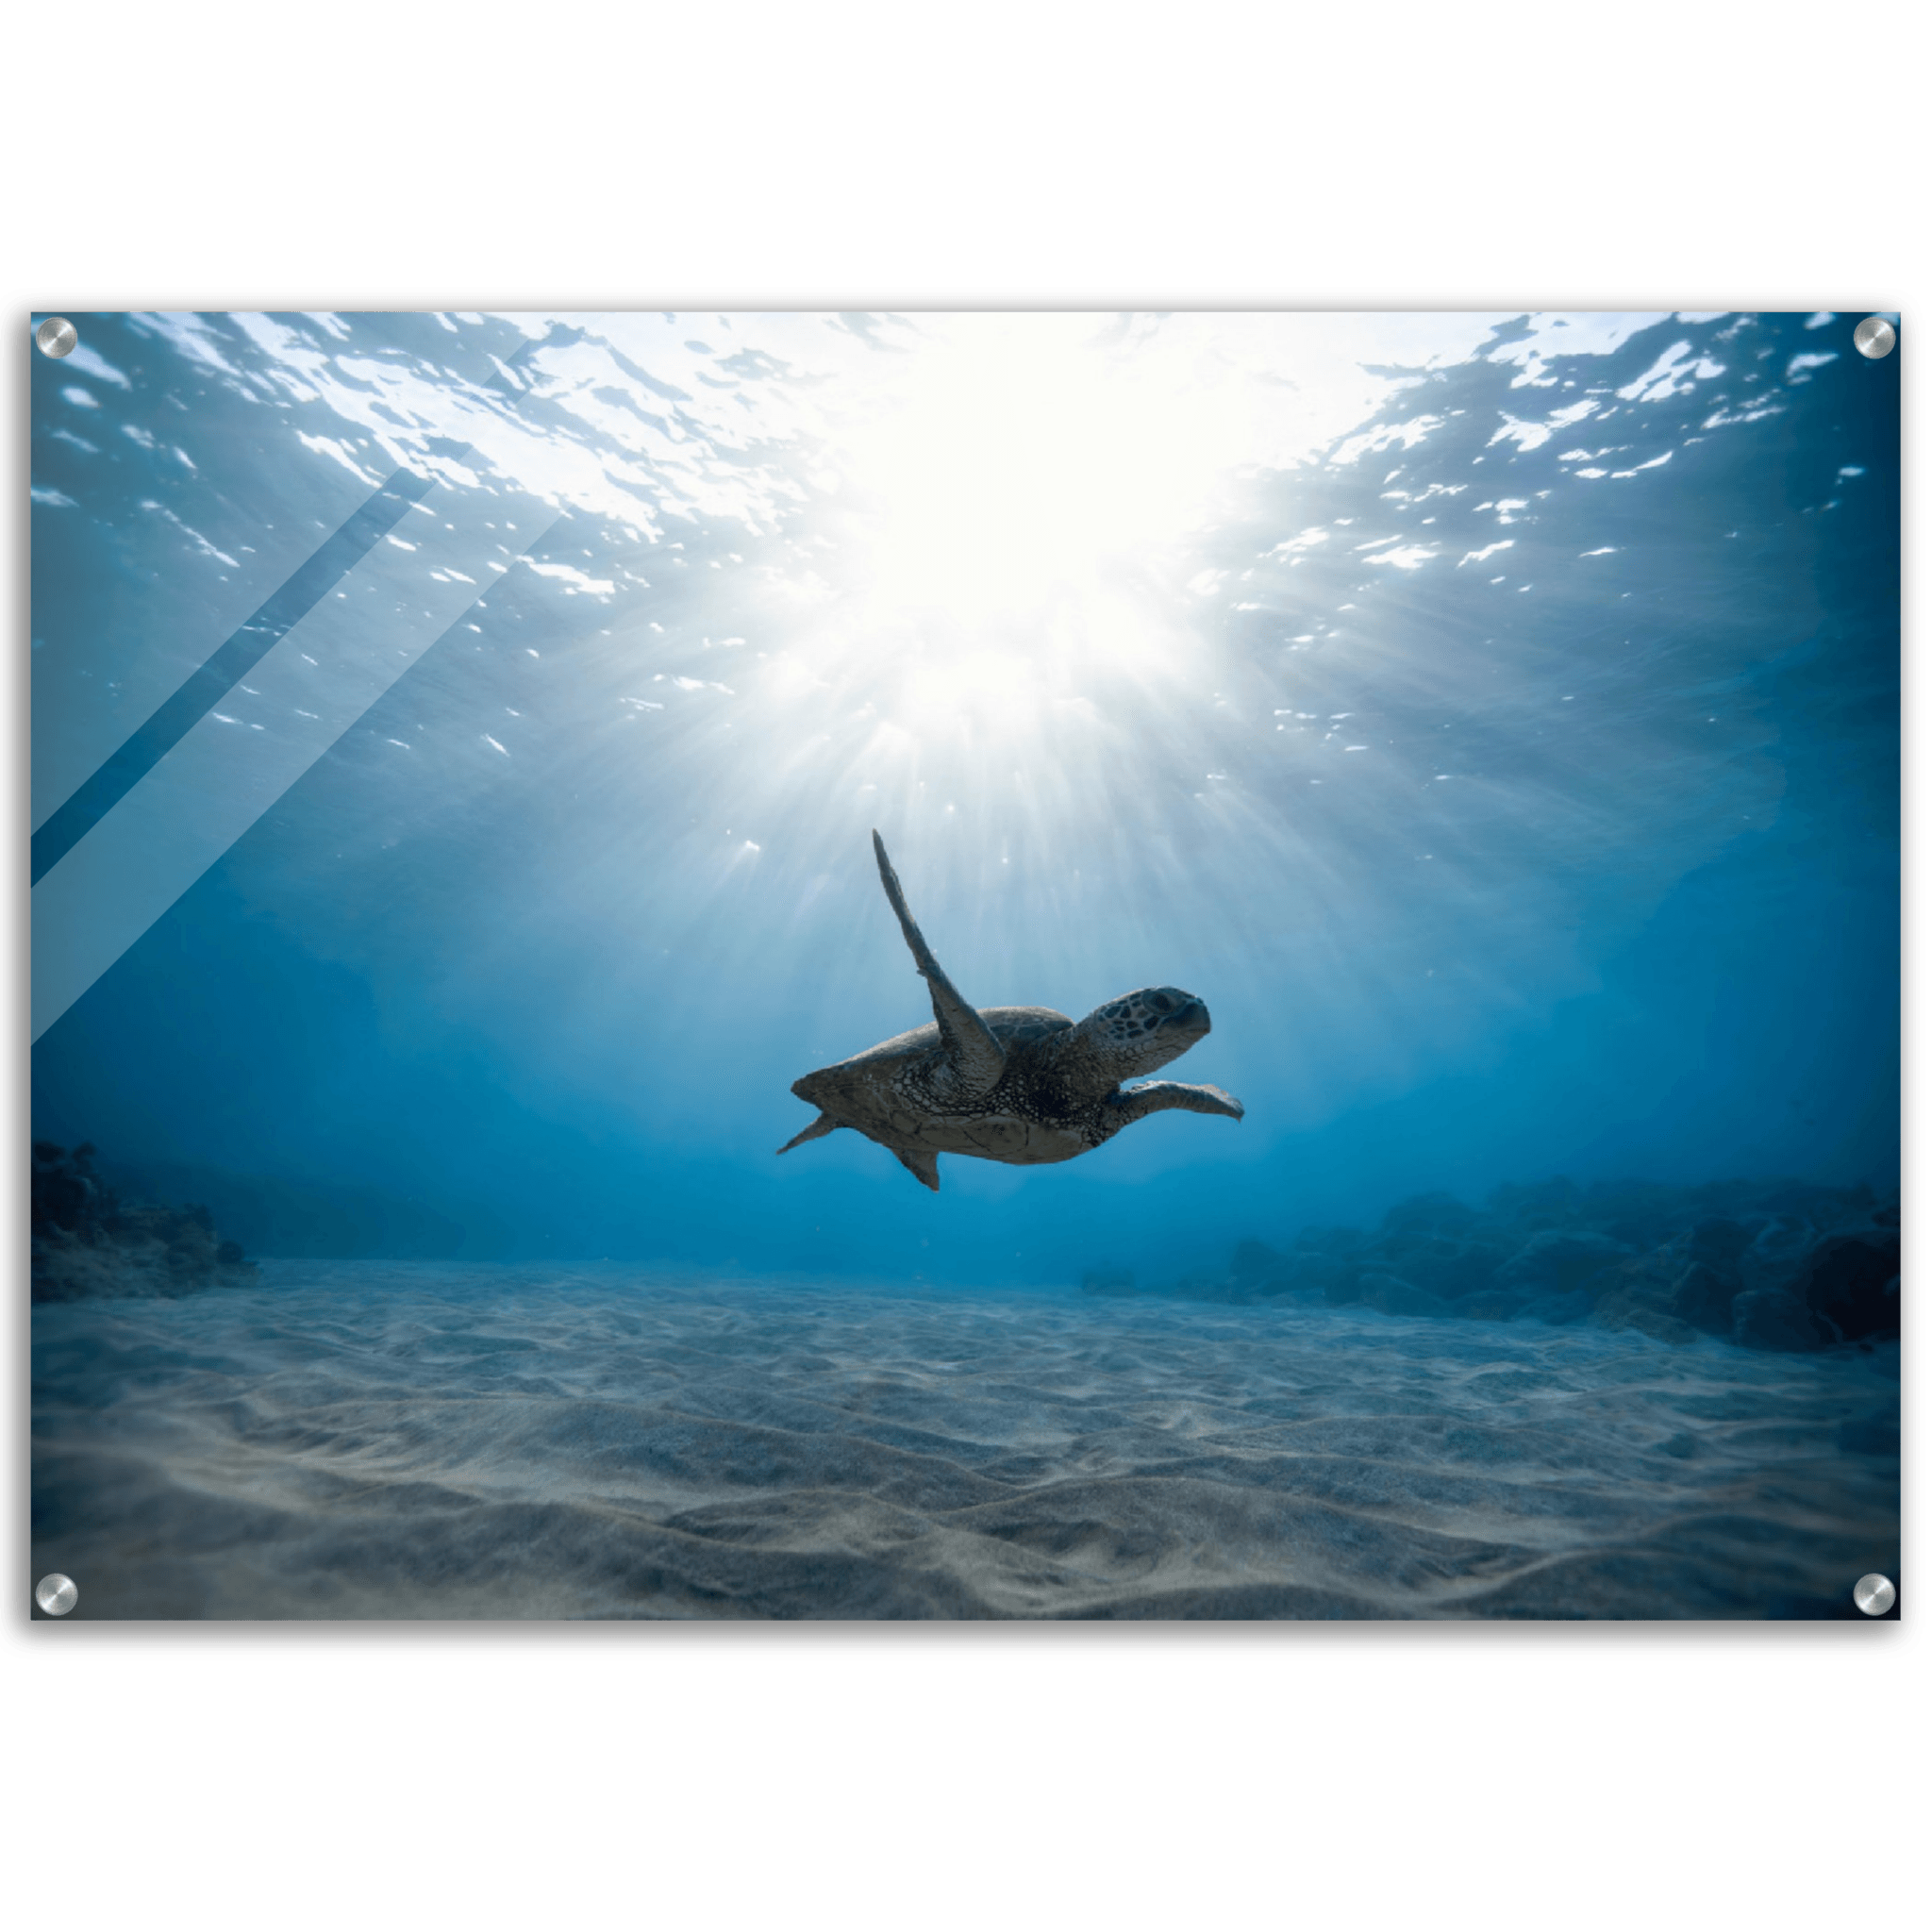 Ocean's Beauty: Majestic Sea Turtle Acrylic Glass Wall Art - Wallfix